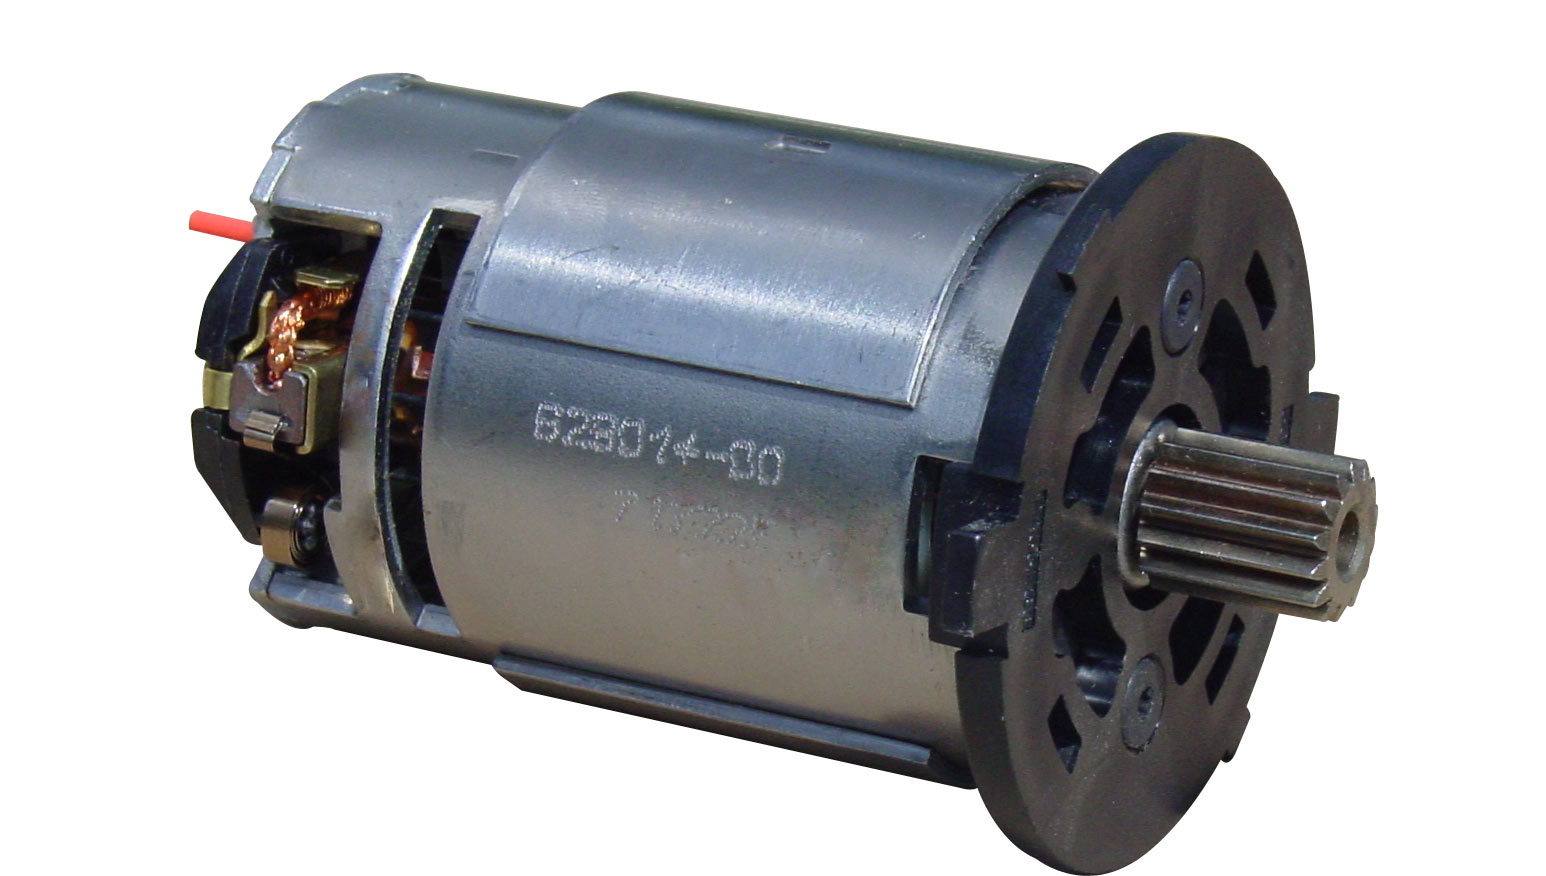 Dewalt - DeWalt 36V Hammerdrill Motor